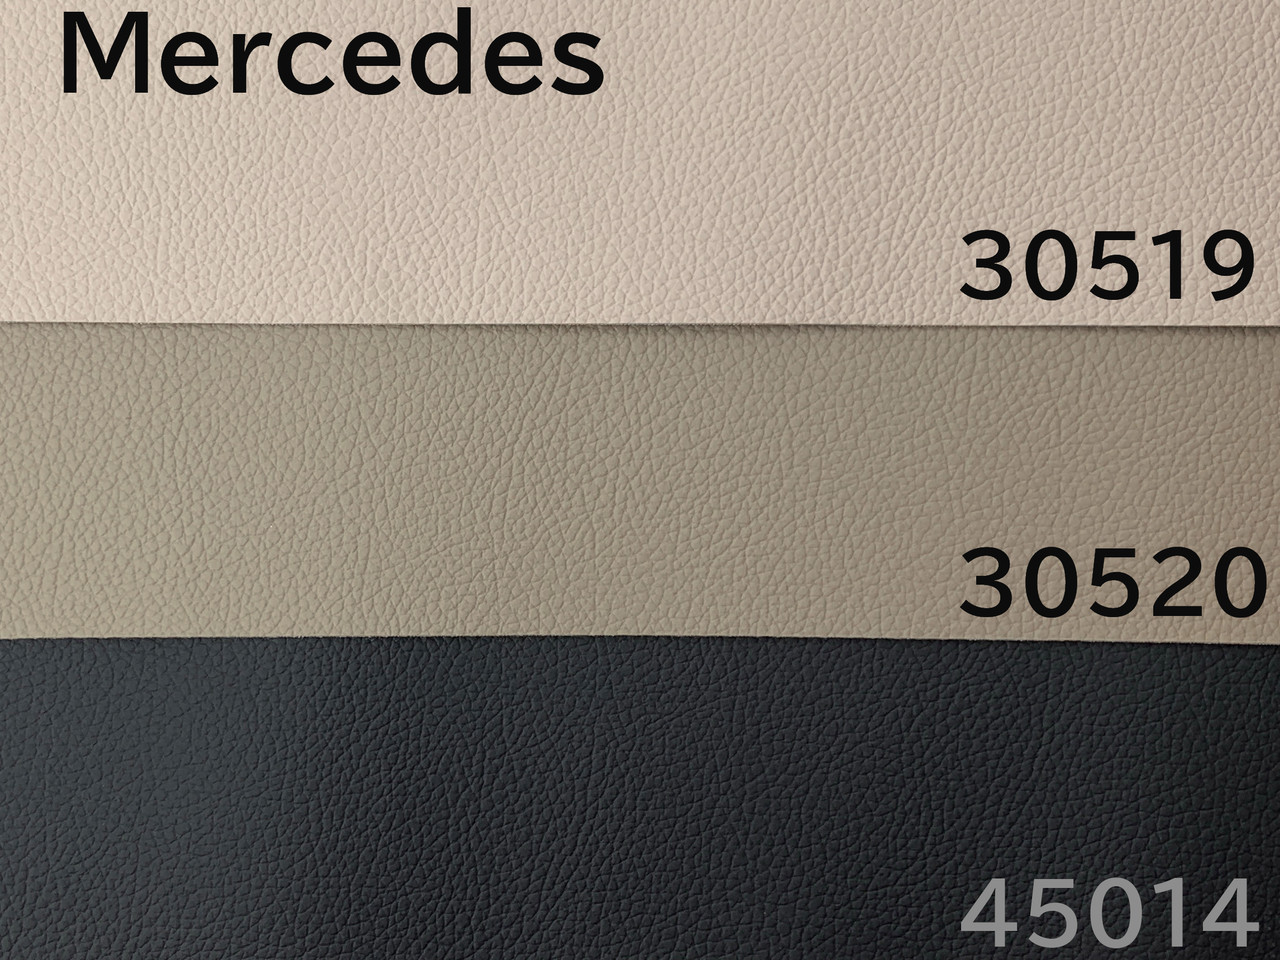 Автомобильный кожзам Mercedes 30519 крем, на тканевой основе (ширина 1,40м) Турция детальная фотка